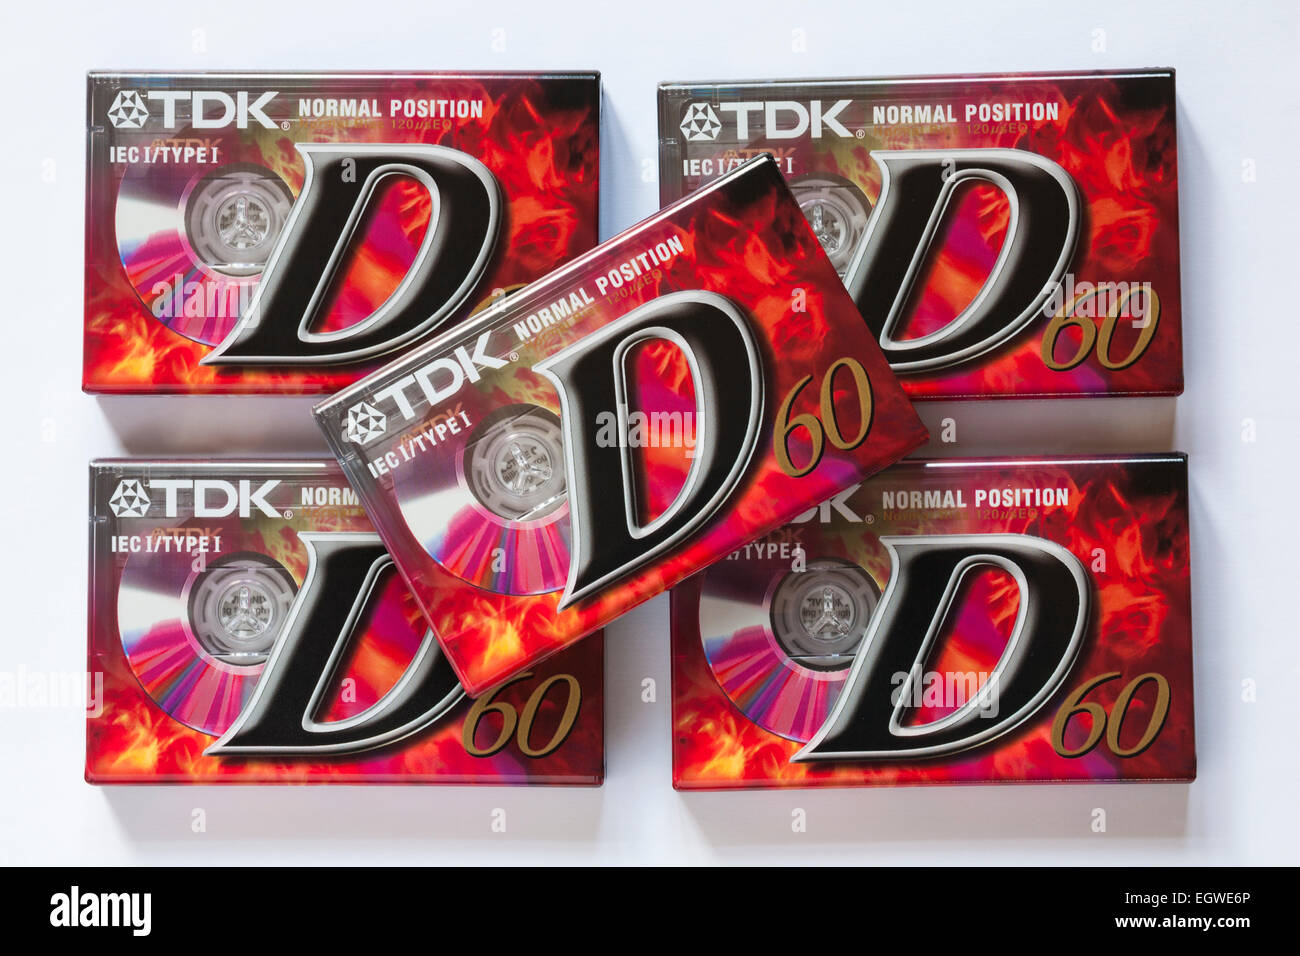 Haufen neue verpackte TDK Normalposition D60 audio Kassetten eingestellt auf weißem Hintergrund Stockfoto